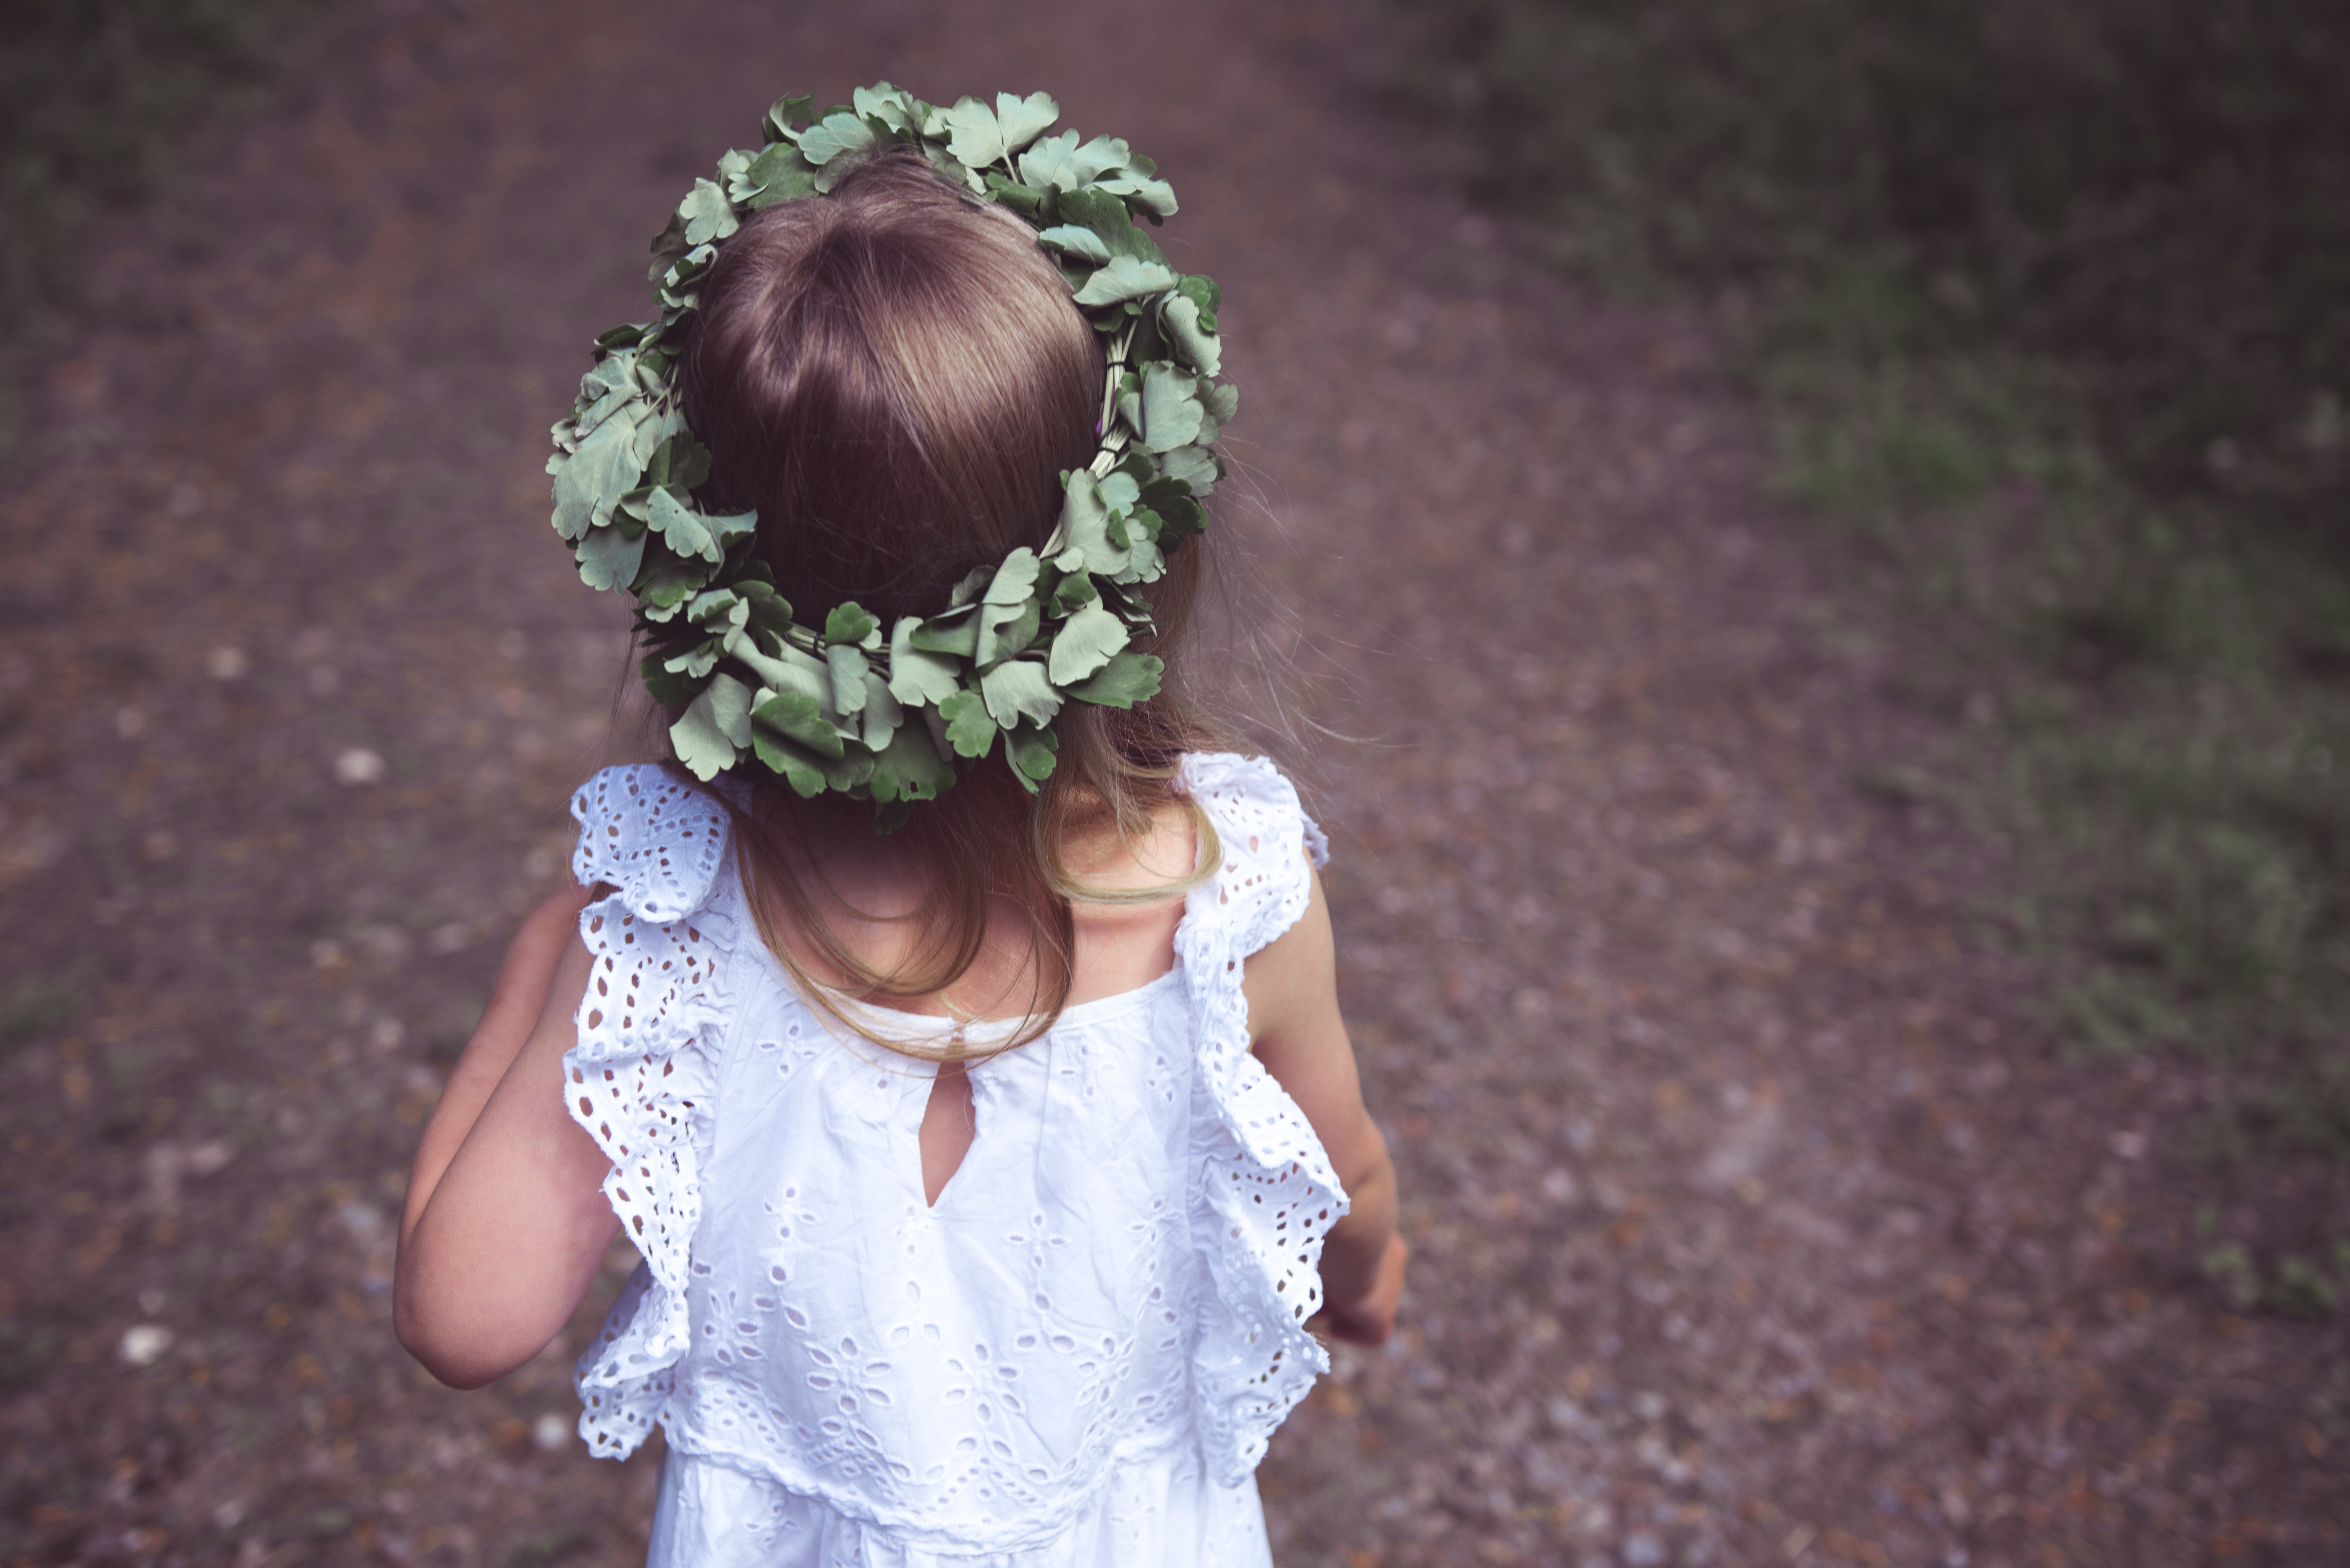 pieni tyttö seisoo selin valkoisessa mekossa ja kukkaseppele päässään